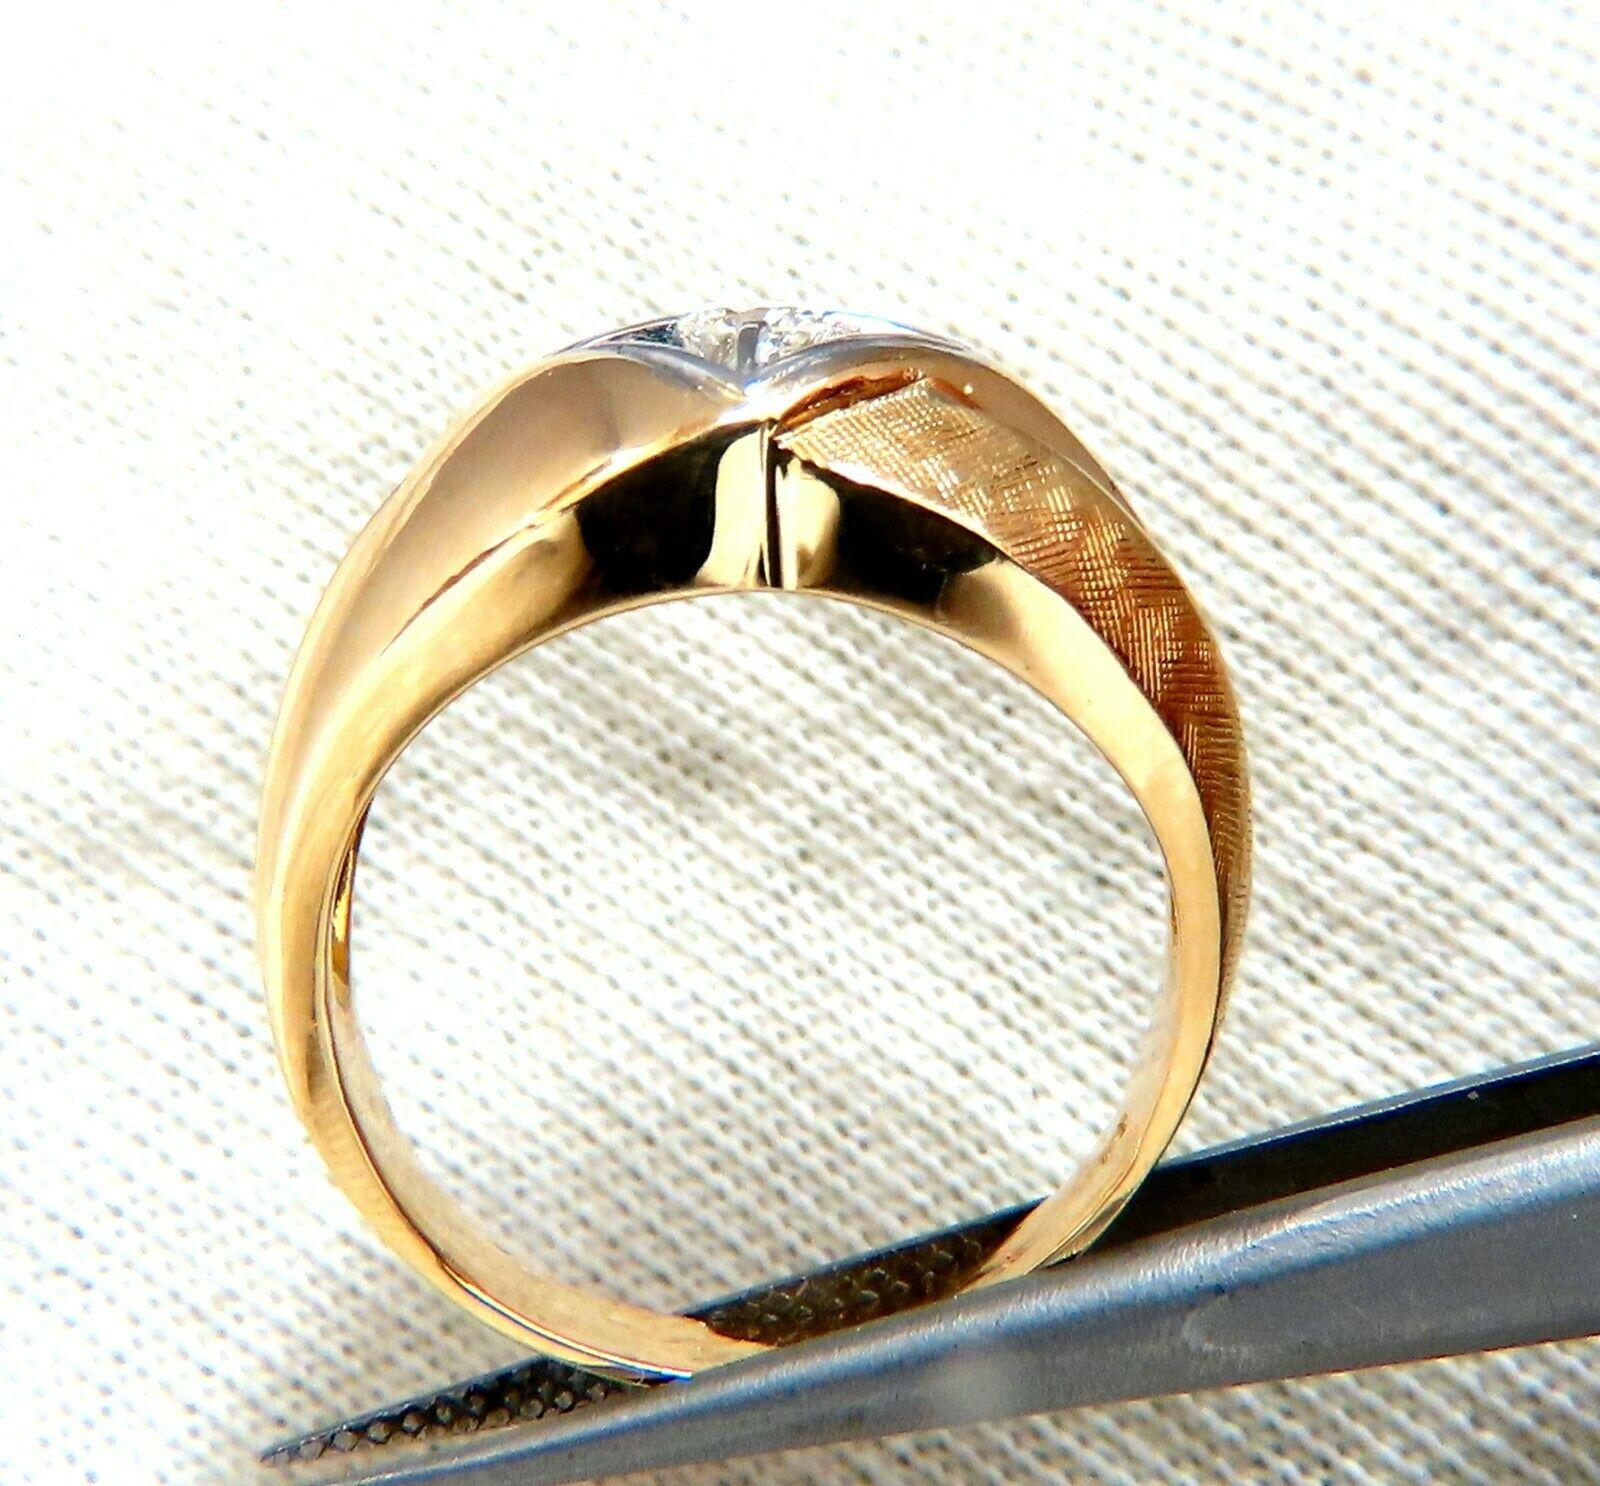 25 karat gold ring